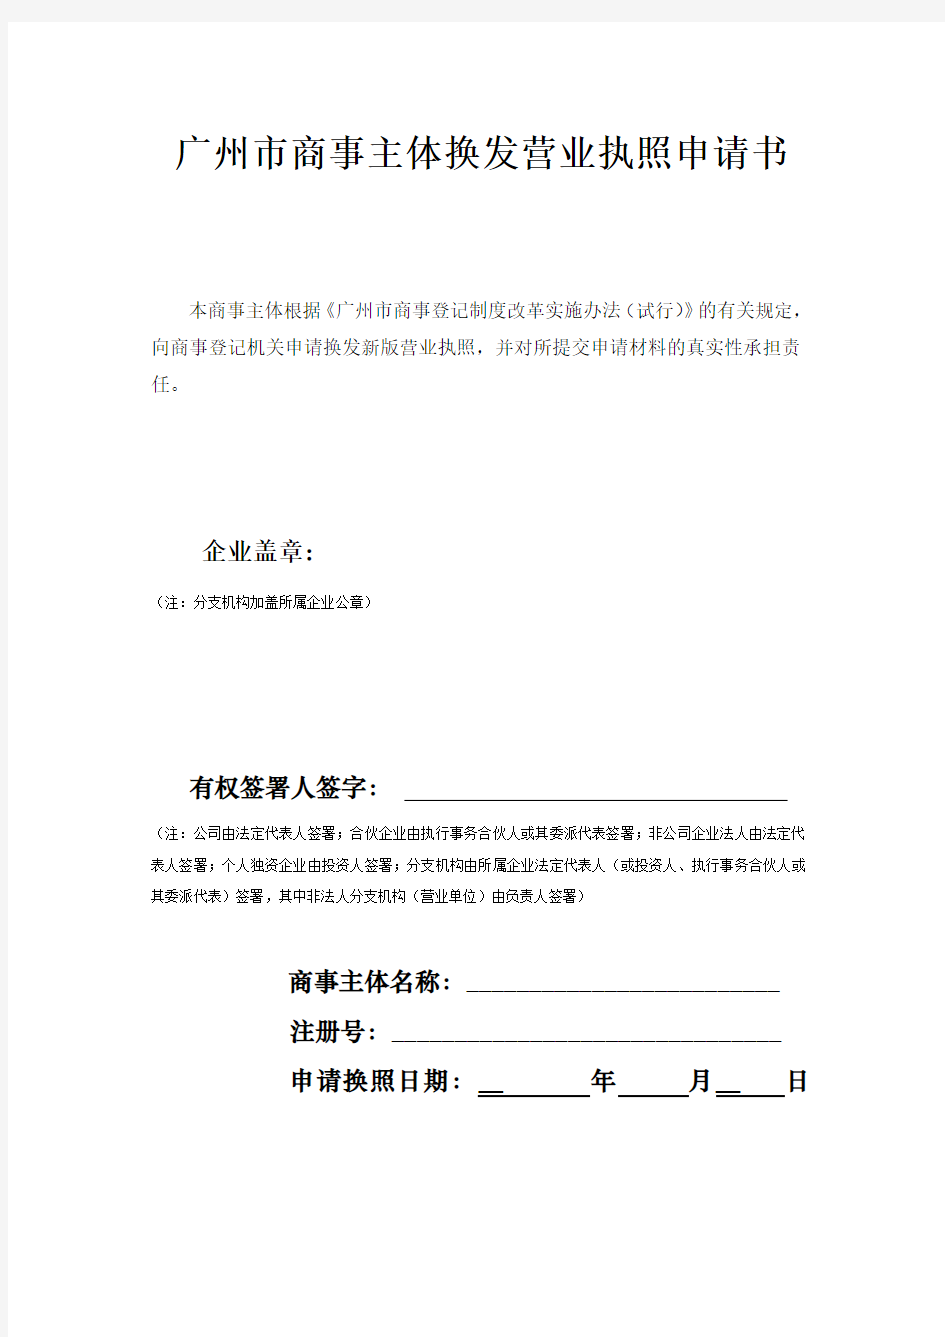 广州市商事主体换发营业执照申请书